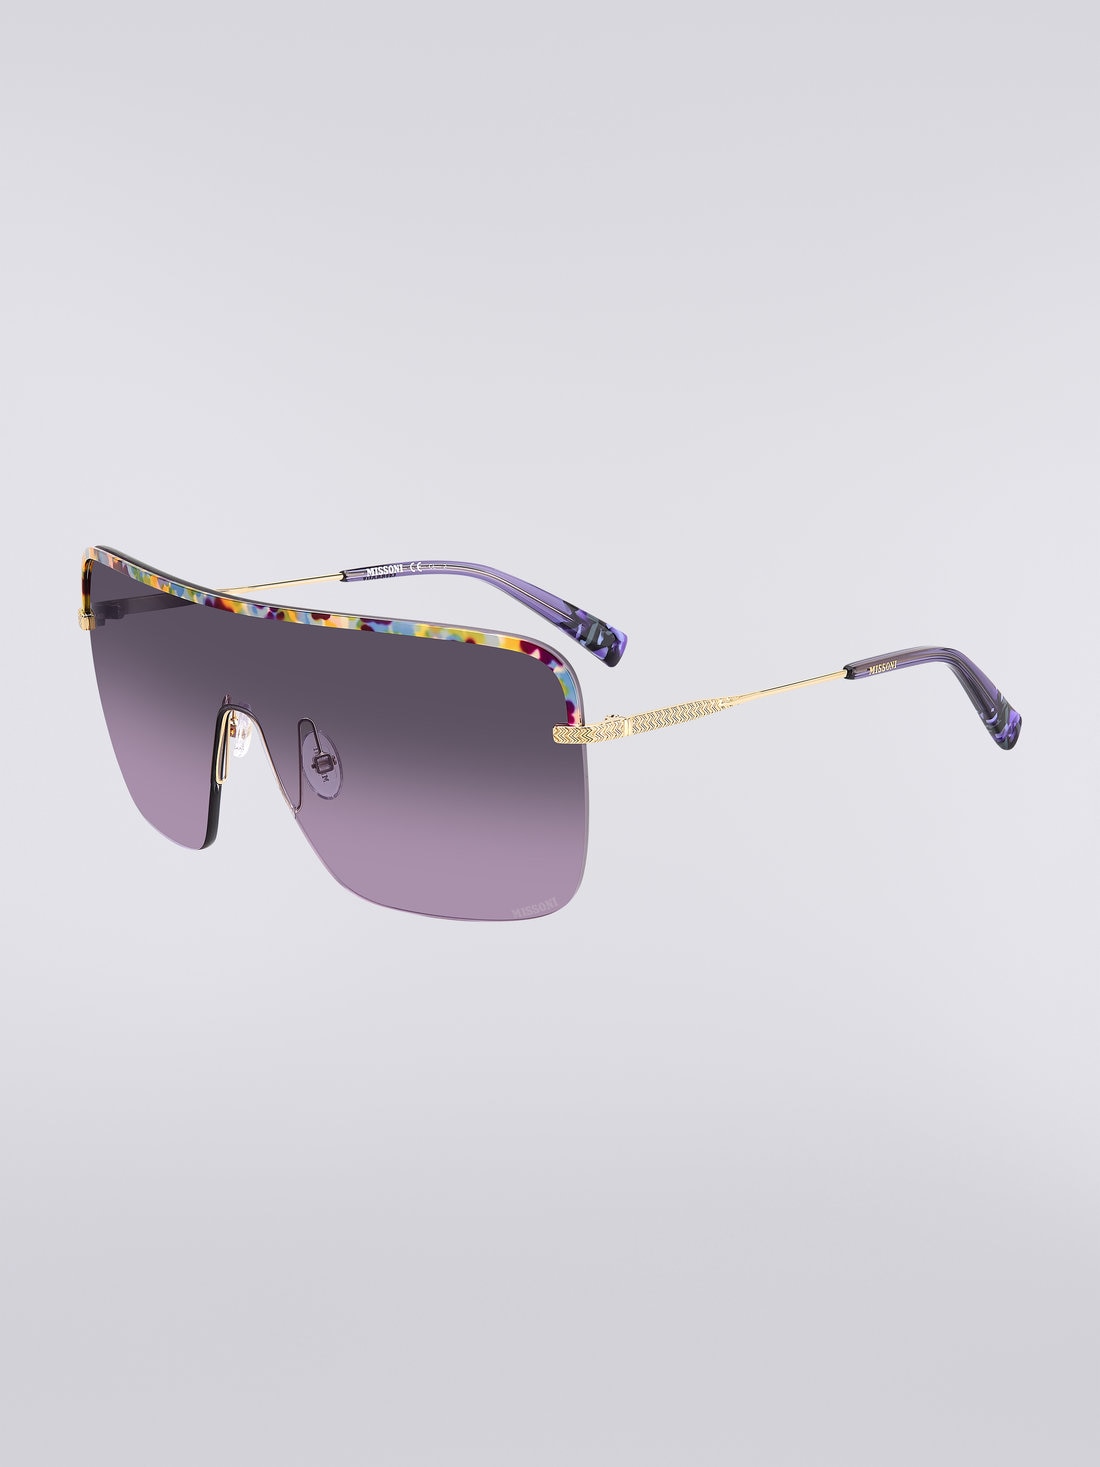 Missoni Seasonal Metal Sunglasses, Multicoloured  - 8051575840227 - 1